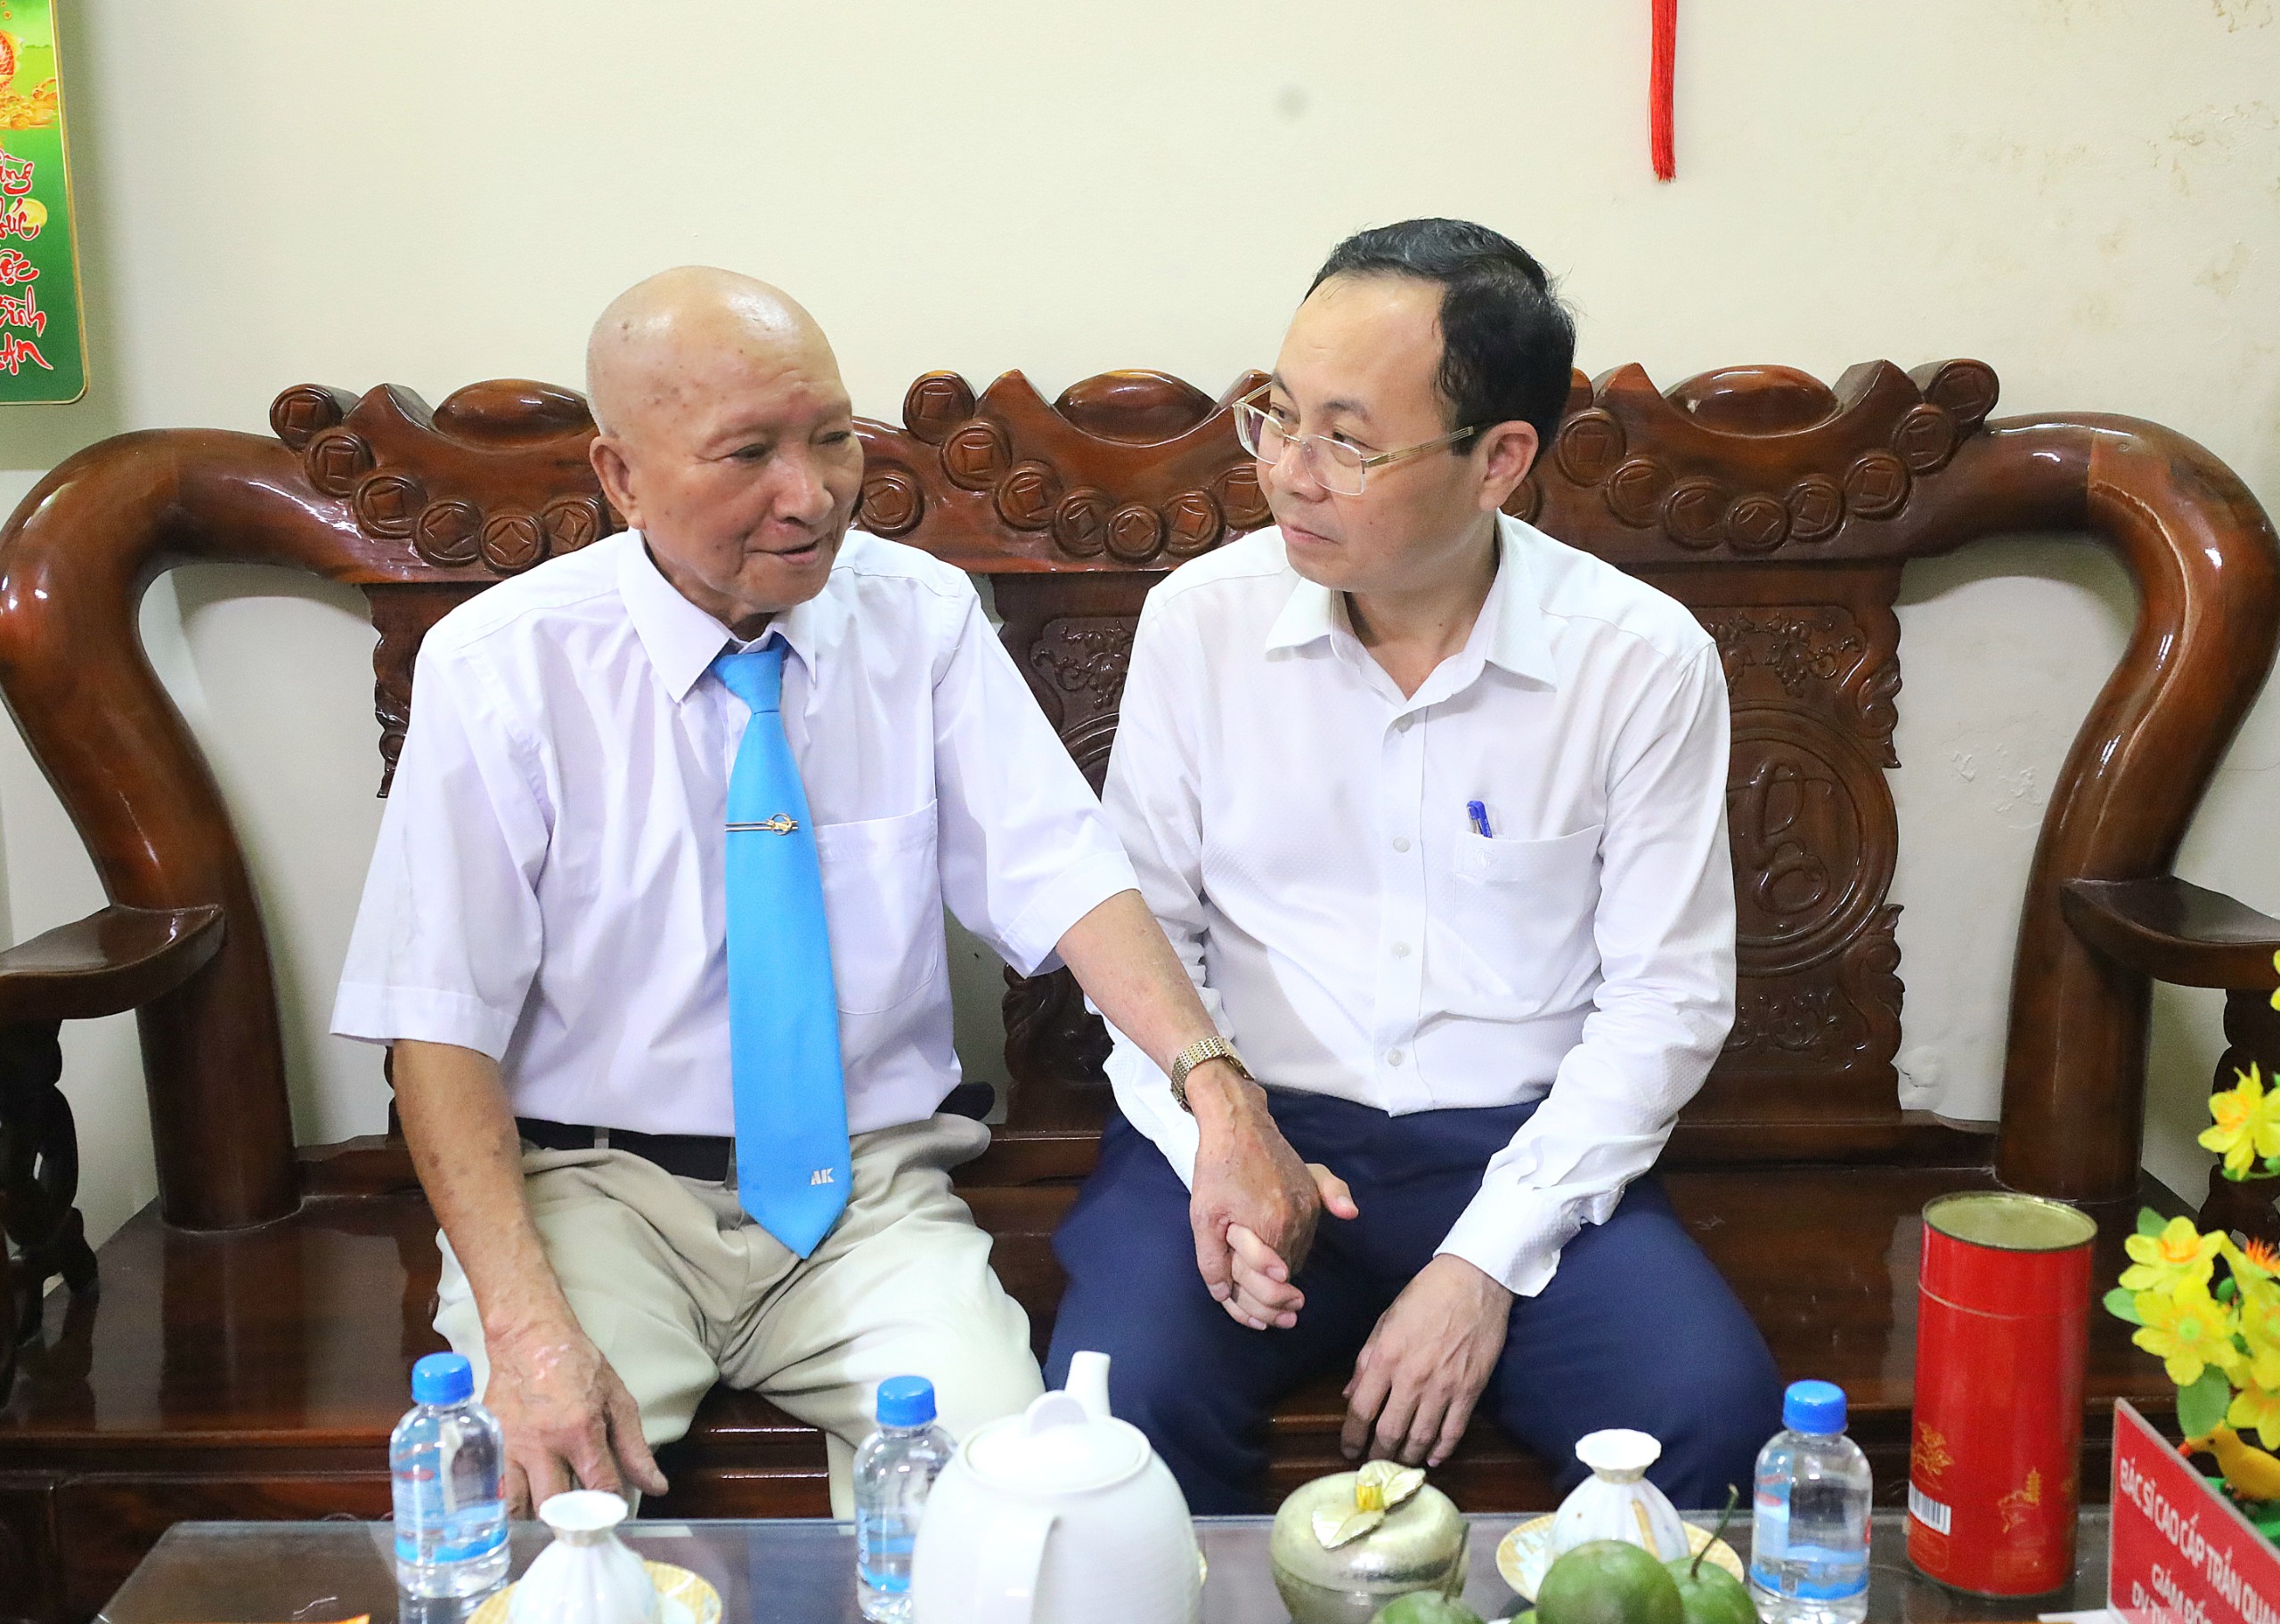 Ông Nguyễn Văn Hiếu - Ủy viên dự khuyết BCH Trung ương Đảng, Bí thư Thành ủy Cần Thơ trò chuyện cùng Chuẩn úy Trần Quang Thành.